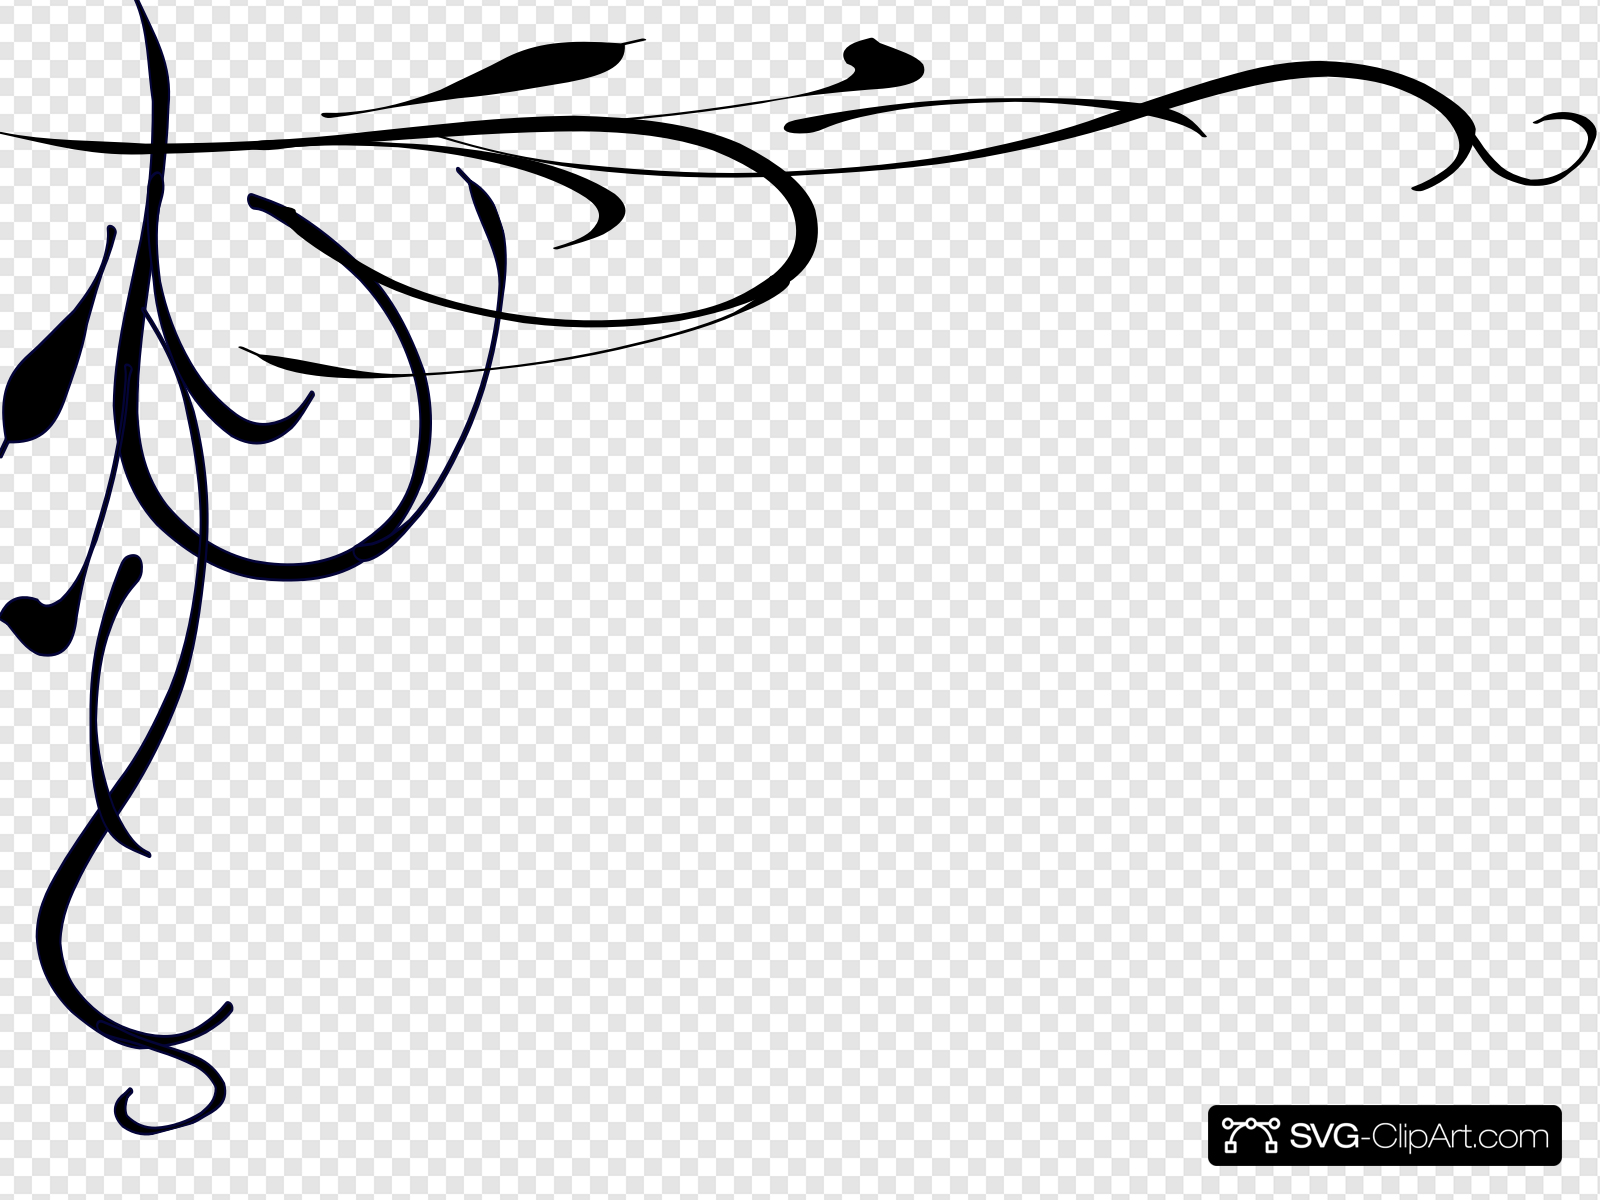 Love Birds Border Clip art, Icon and SVG.